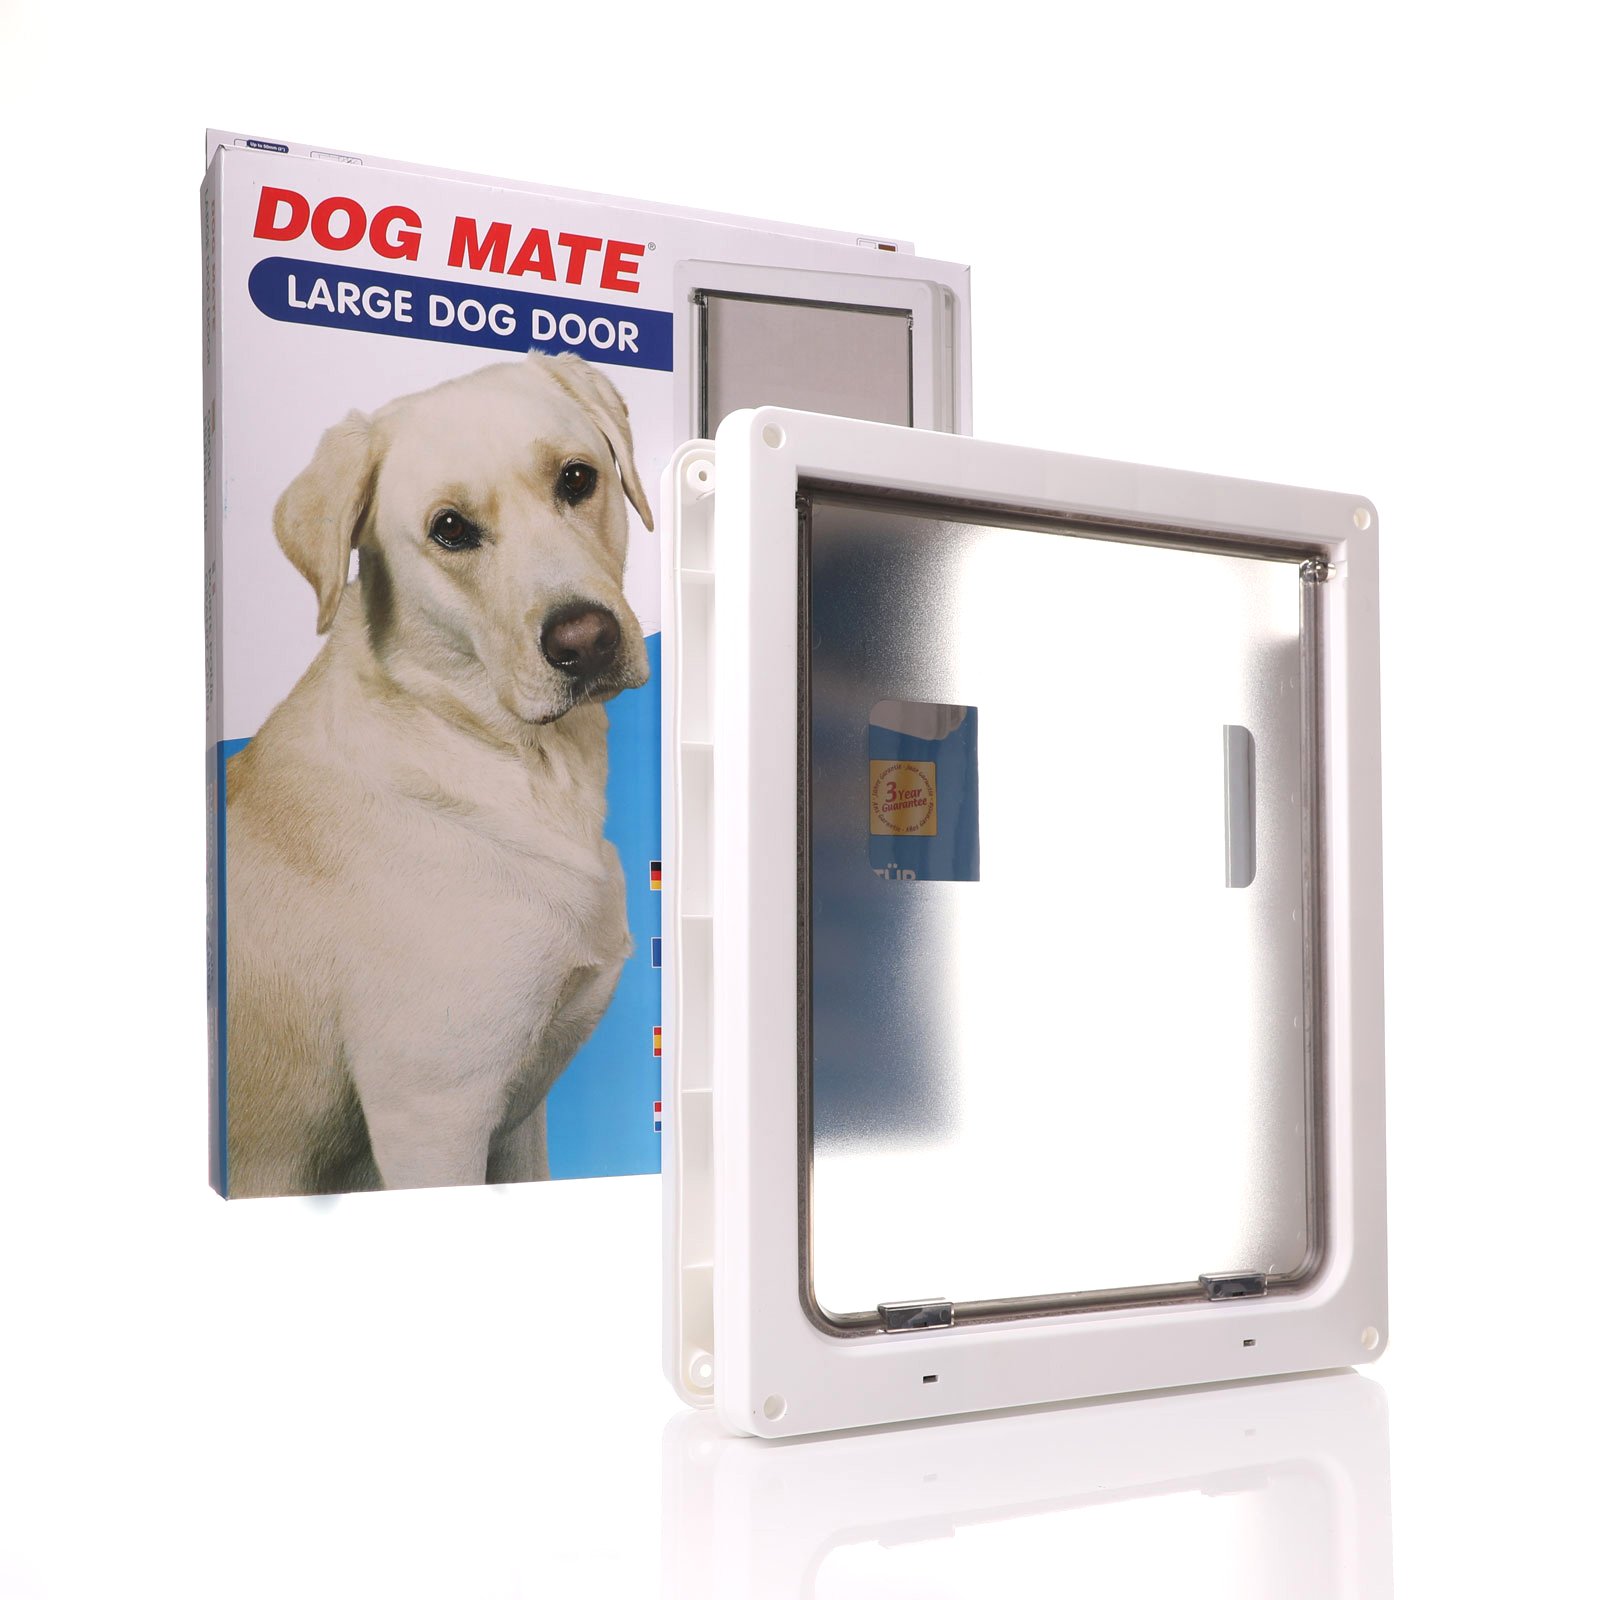 Biggest dor door in the Dog Mate range? PM216w